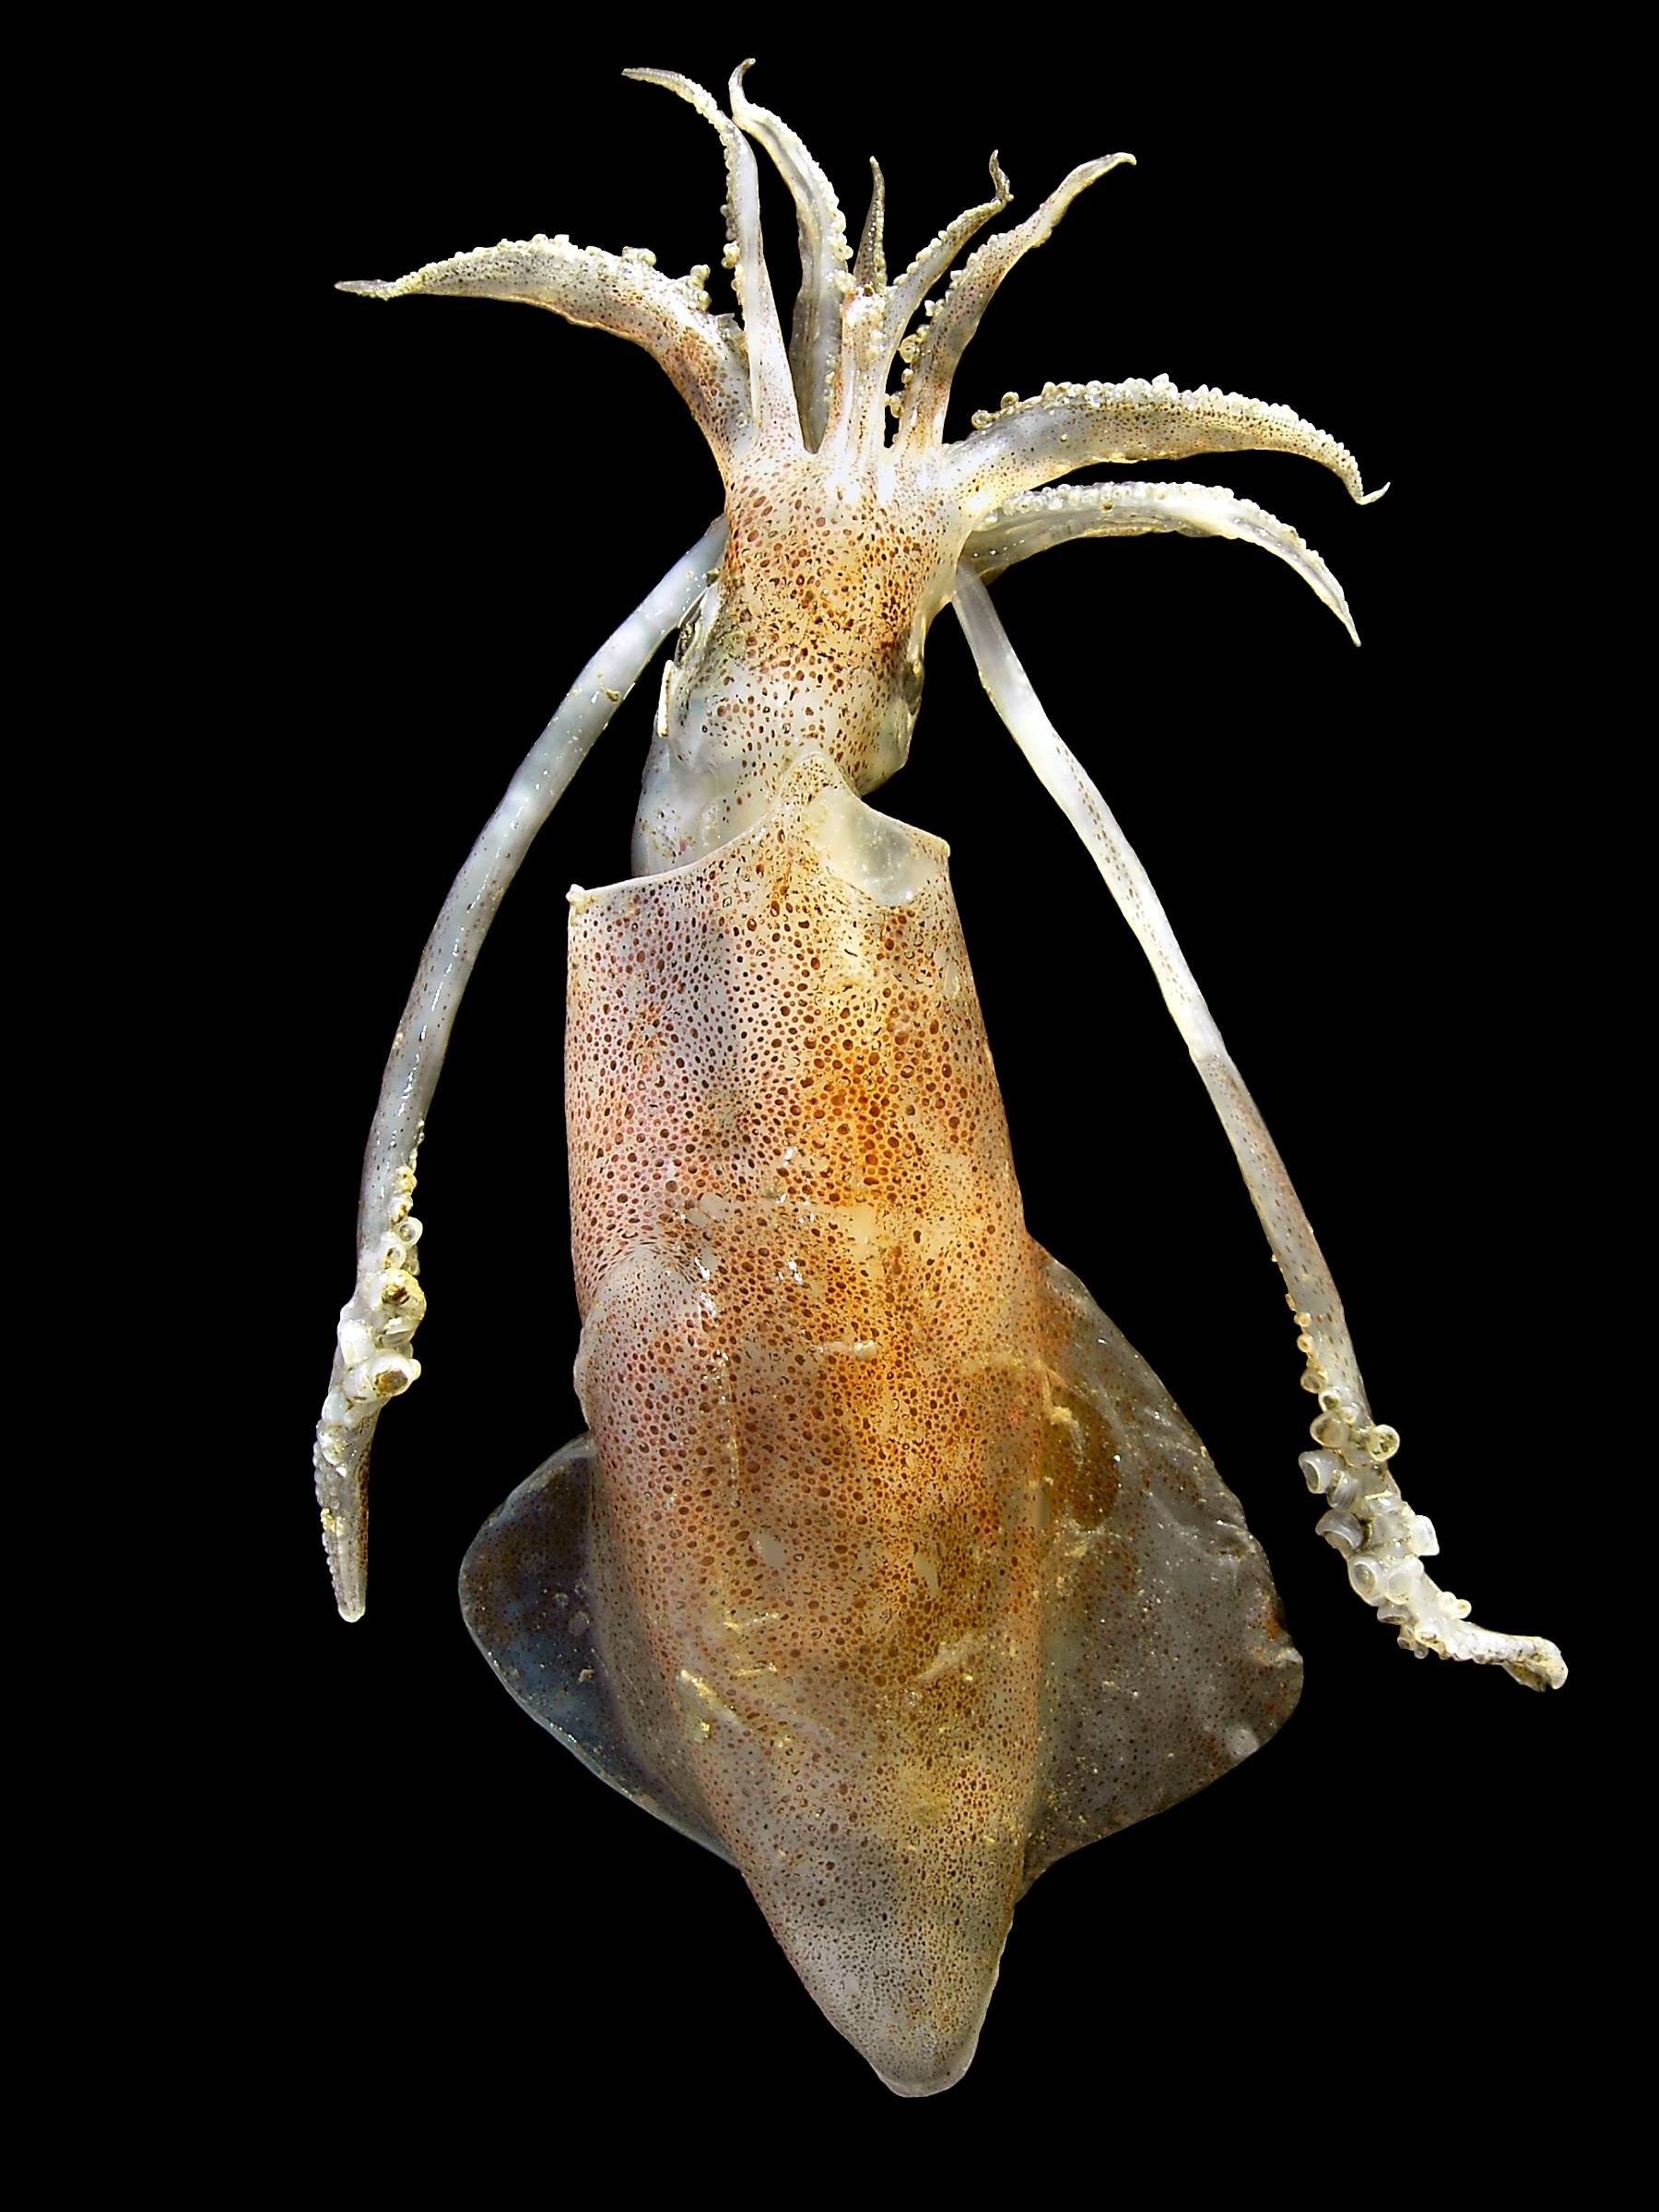 Közönséges kalmár (Loligo vulgaris) A karokkal együtt eléri a félméteres hosszúságot. Hátoldala kárminvörös, apró kerek foltok díszítik. Karcsú torpedó alakú teste van.